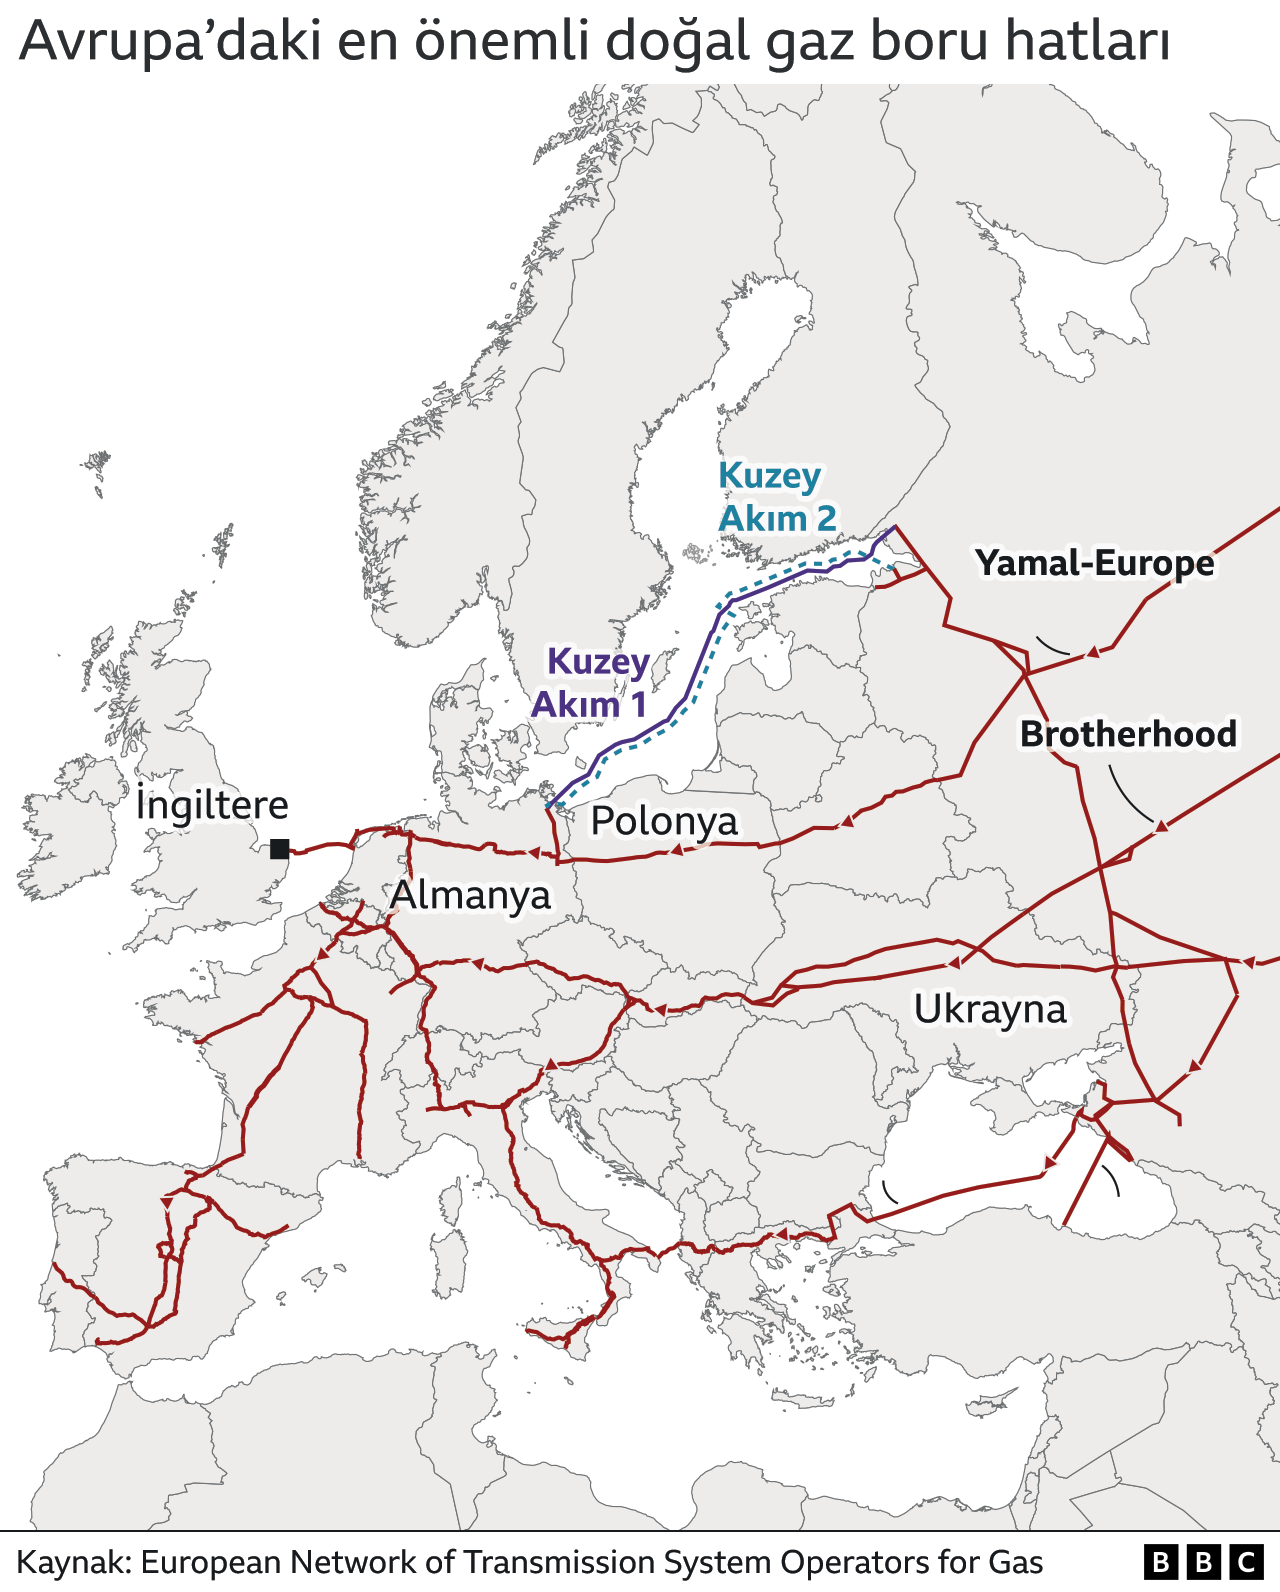 Avrupa'daki en önemli doğal gaz boru hatlarını gösteren harita